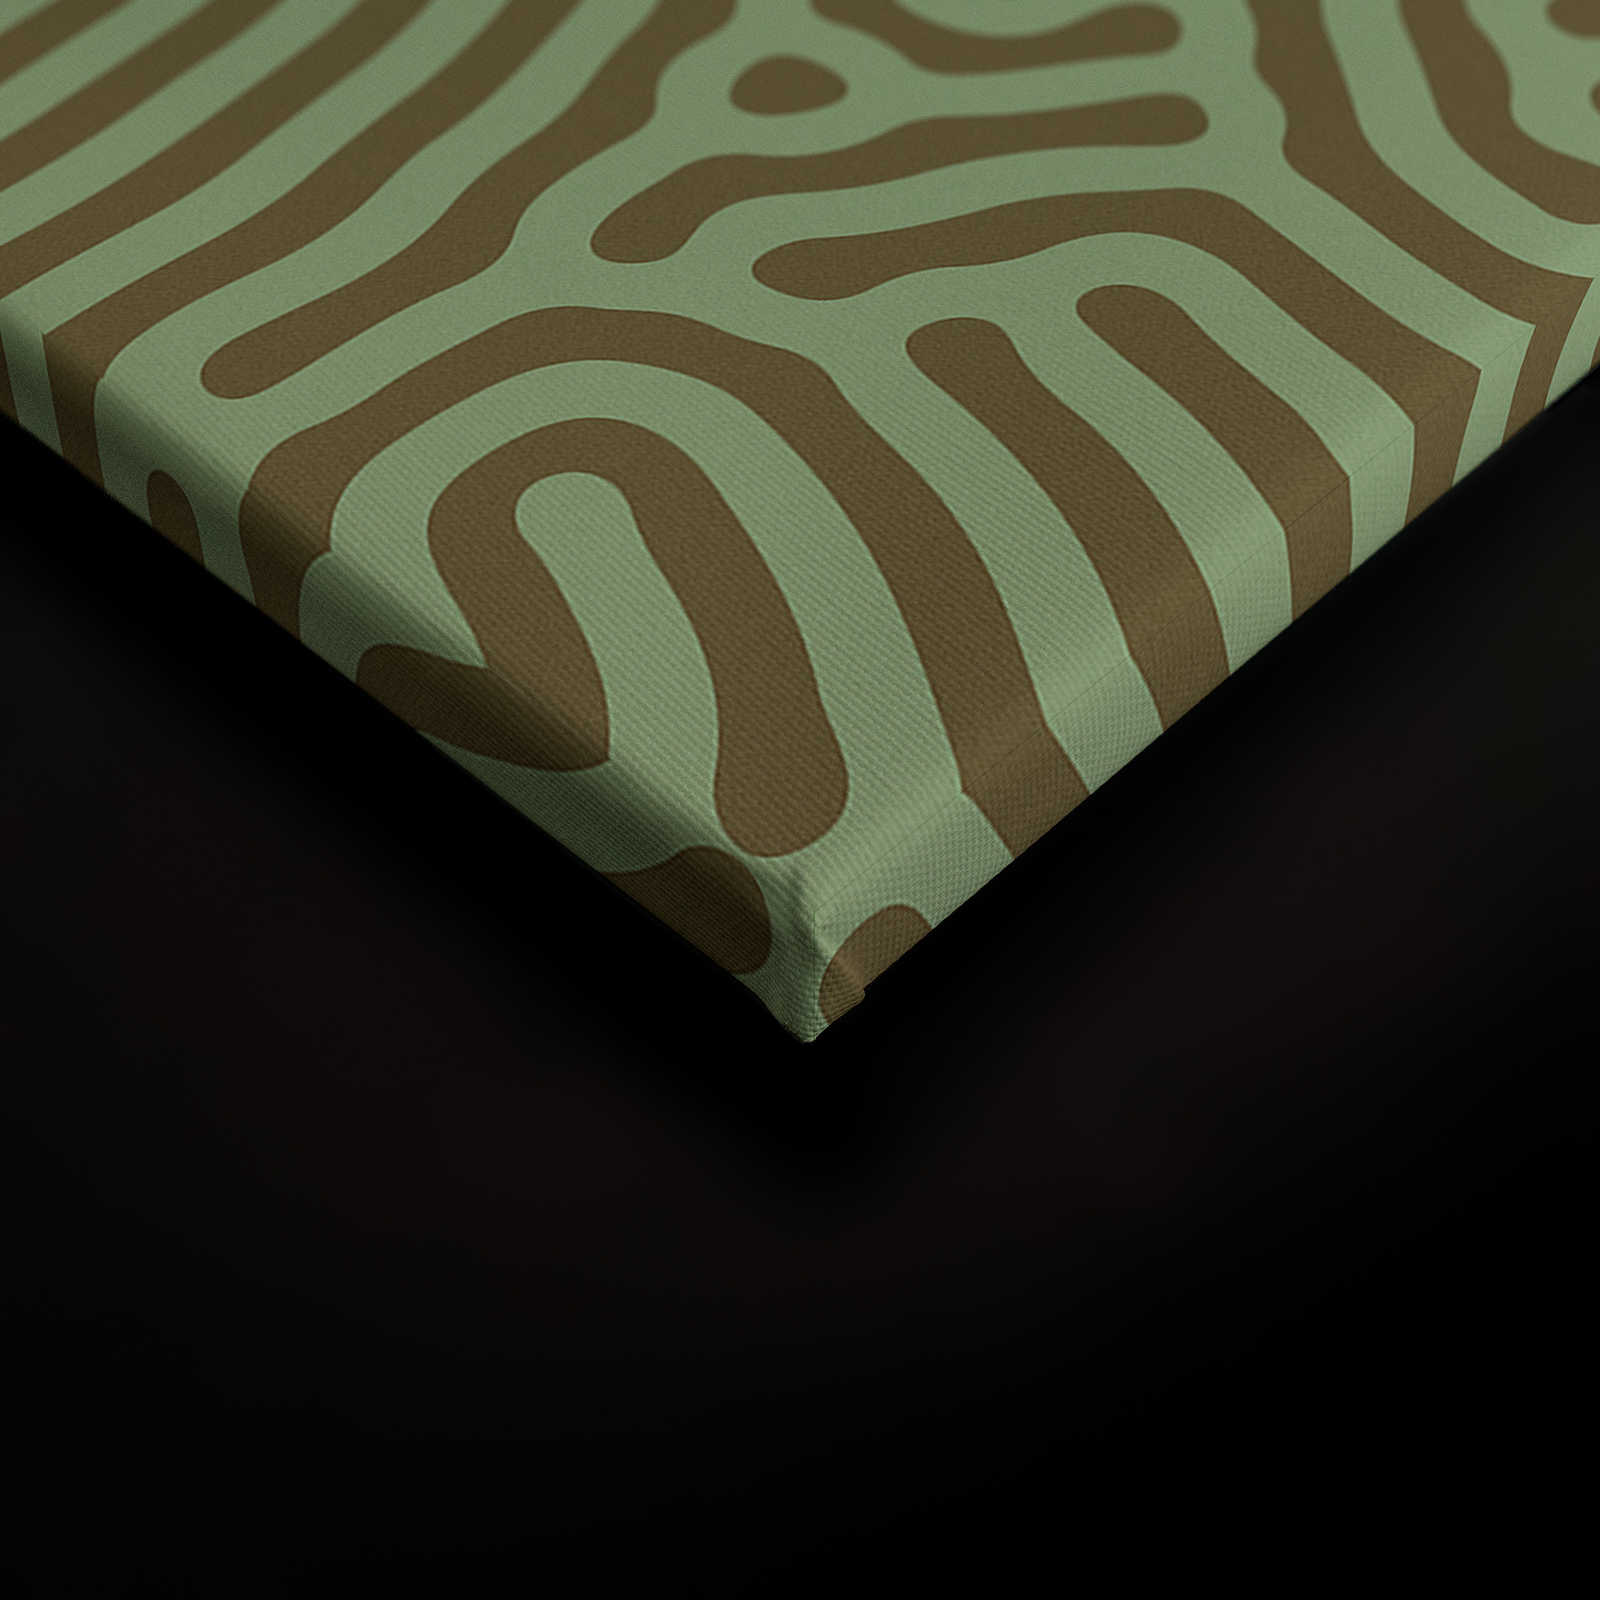             Sahel 1 - Grünes Leinwandbild Labyrinth Muster Salbeigrün – 1,20 m x 0,80 m
        